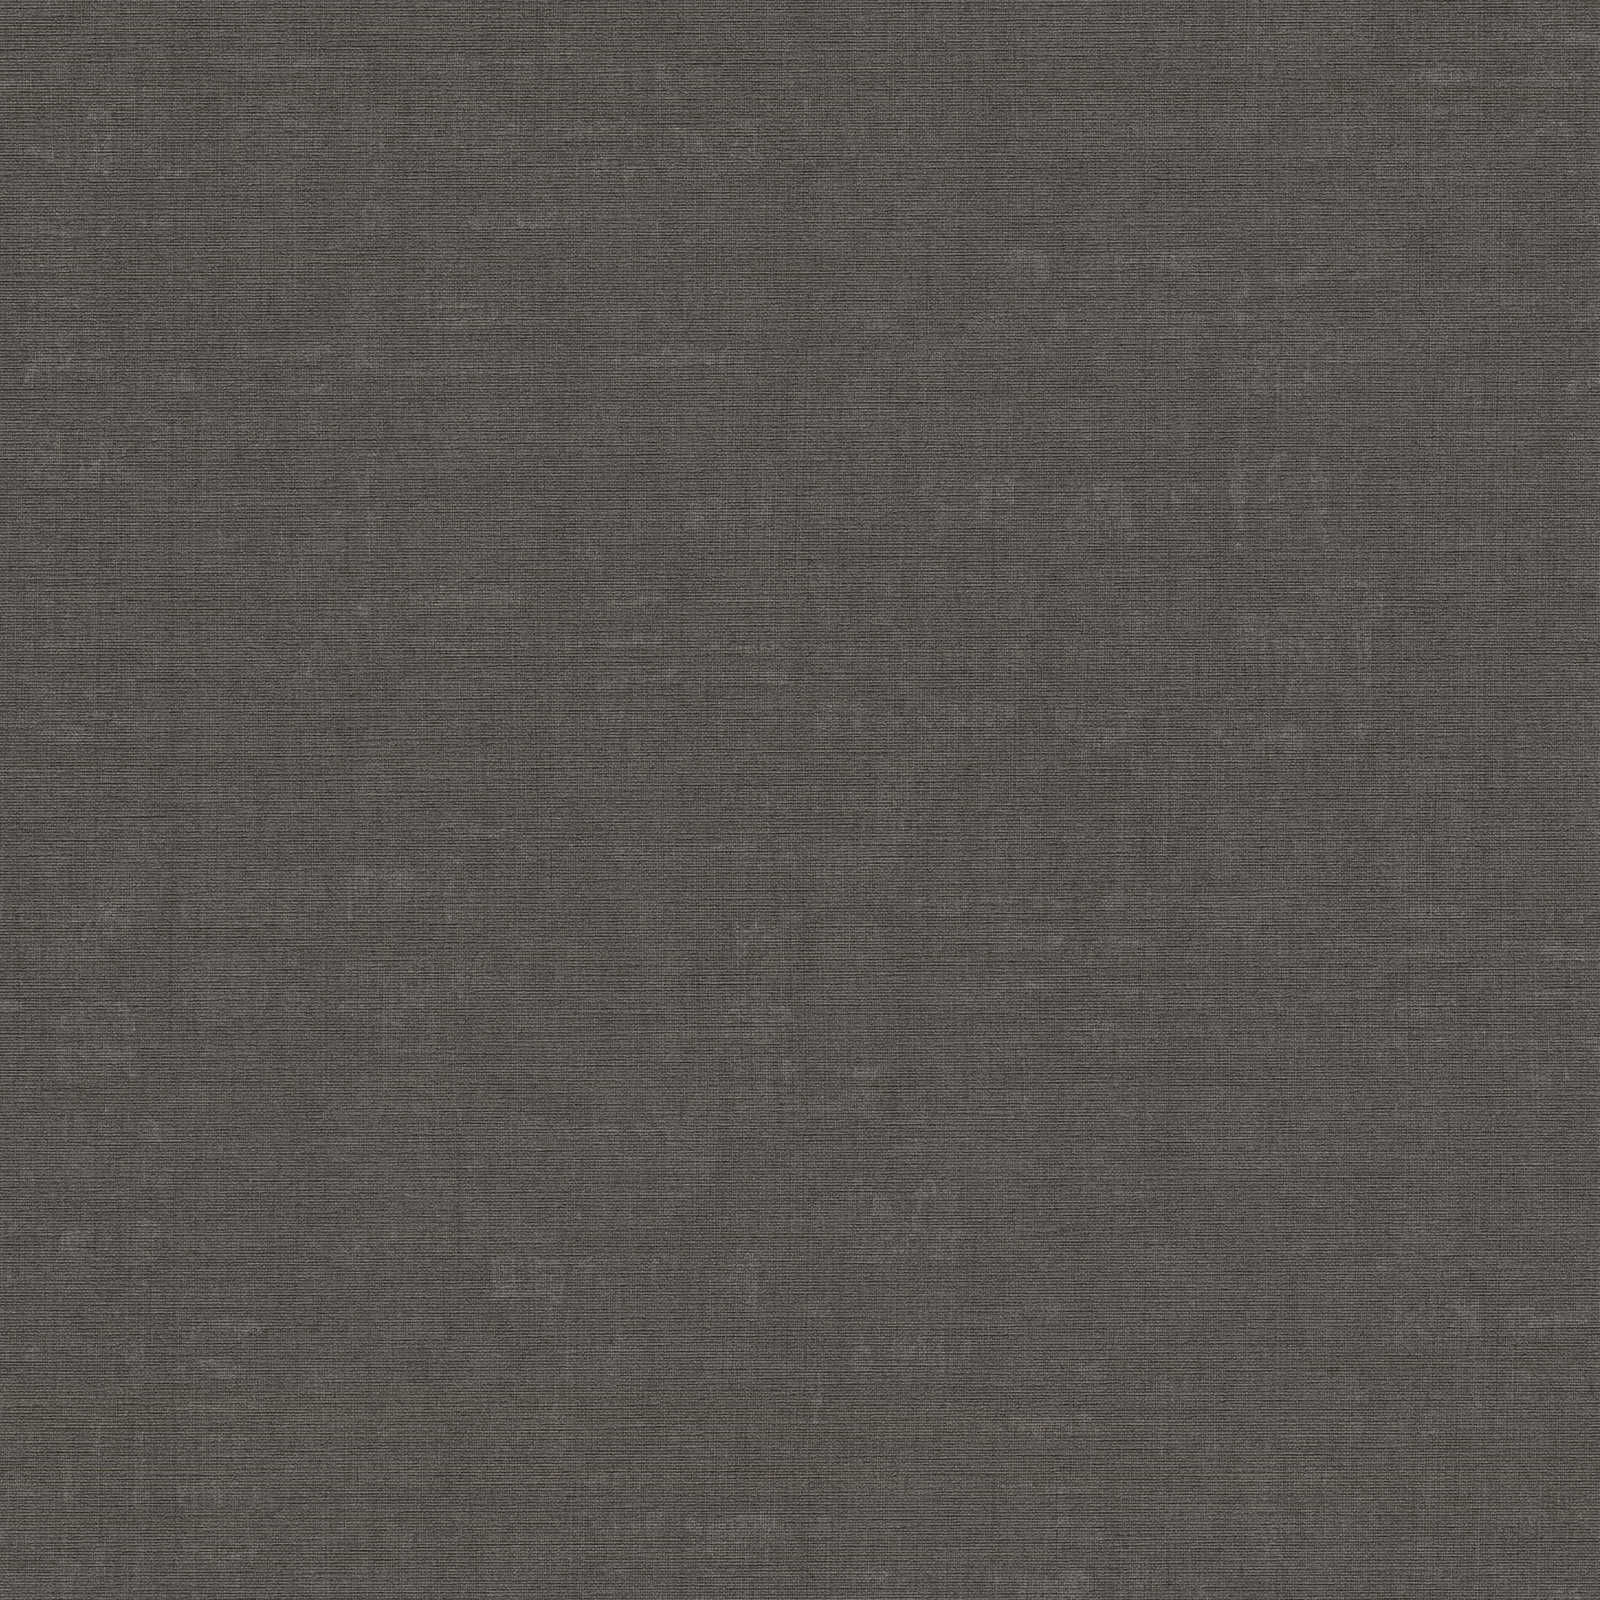 Nara - Mottled Plain plain wallpaper AS Creation Roll Light Black  387453